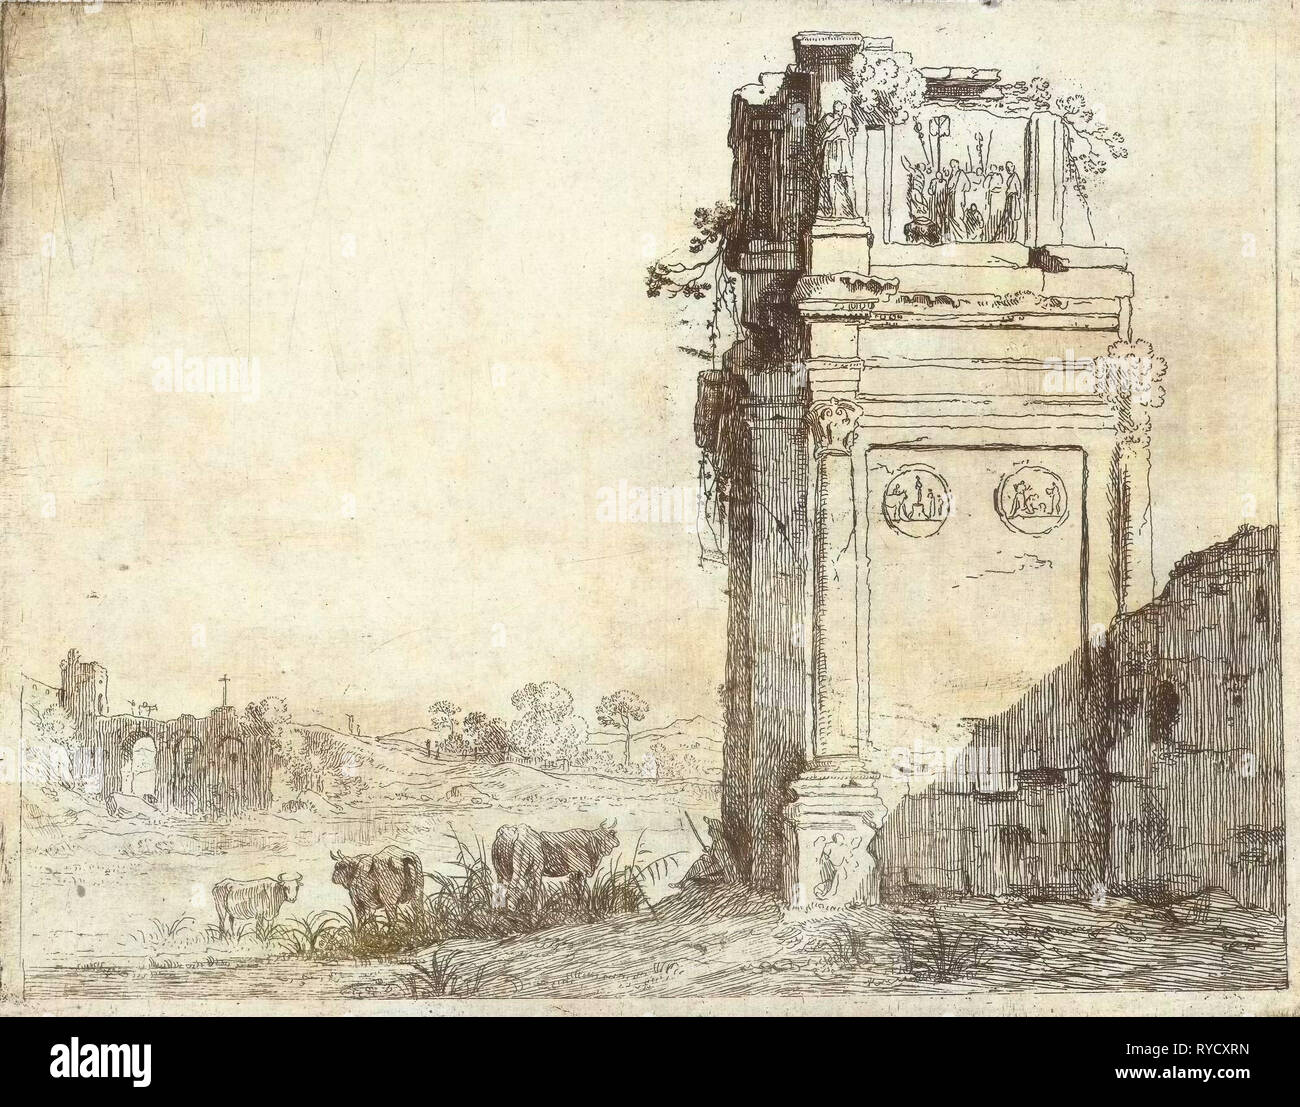 Ruine de l'Arc de Constantin à Rome, Jan Gerritsz. van Bronchorst, Lieve Verschuier, 1613 - 1661 Banque D'Images